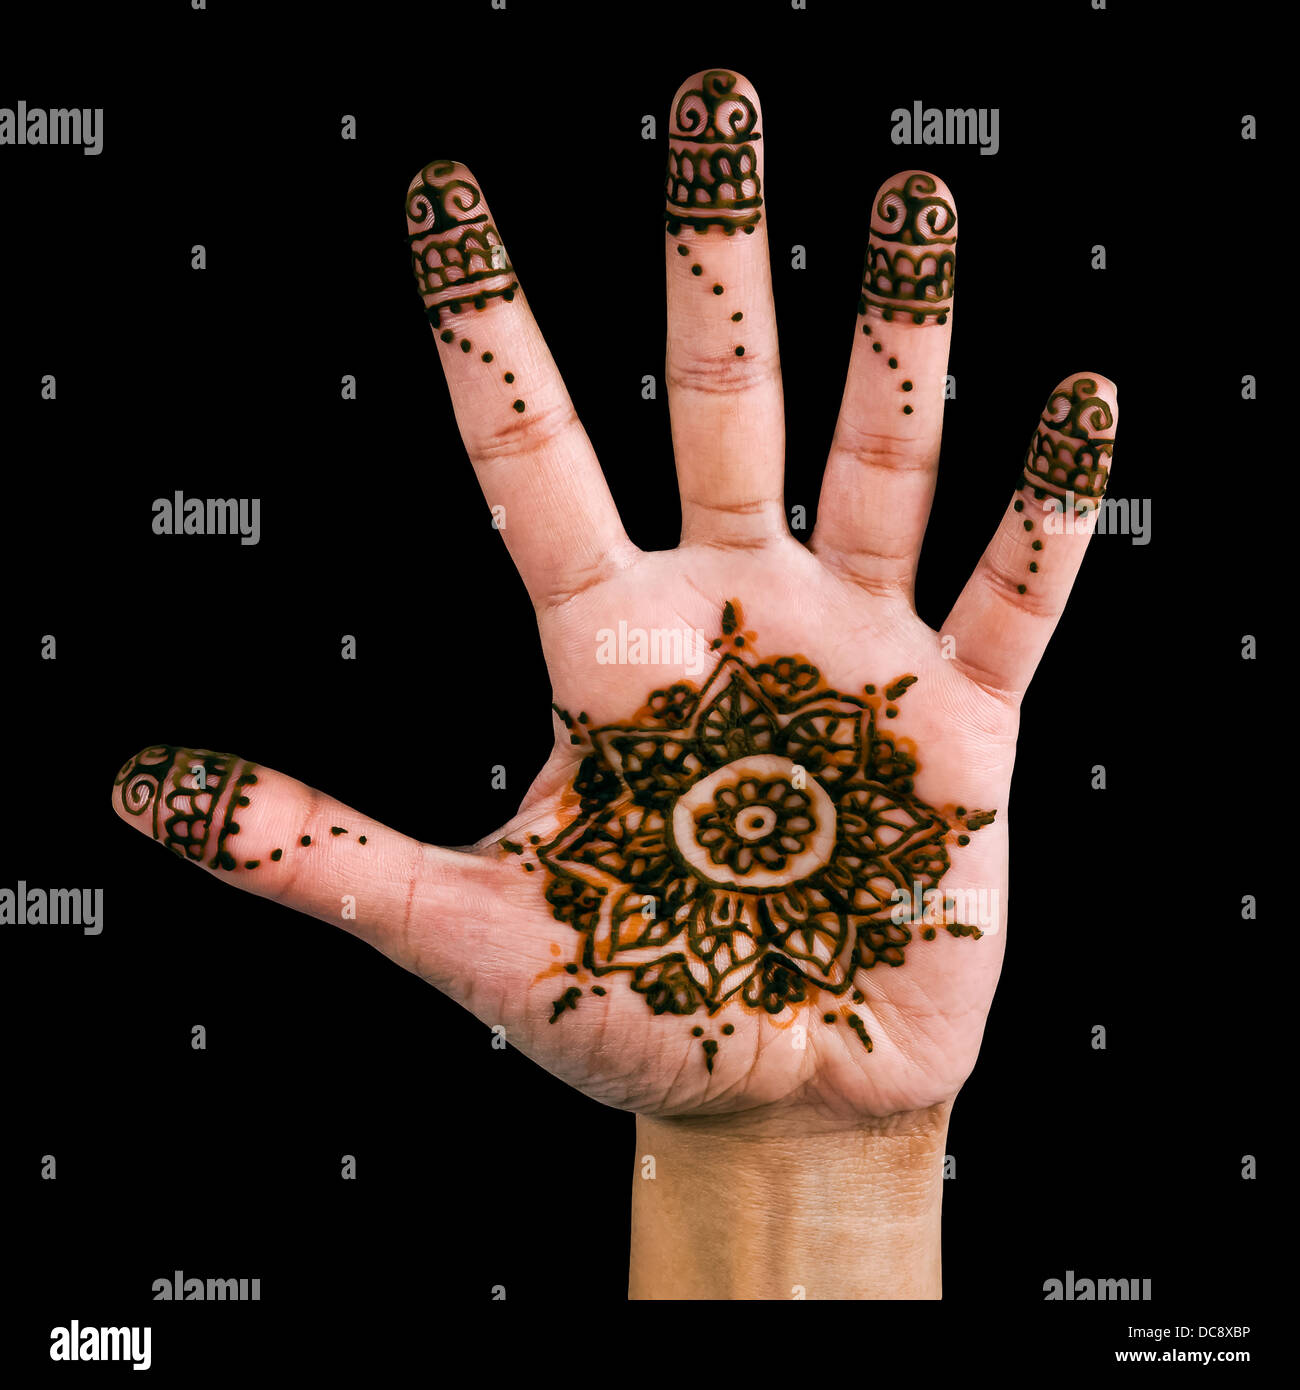 Conception de henné sur la paume de la main - isolé en noir Banque D'Images